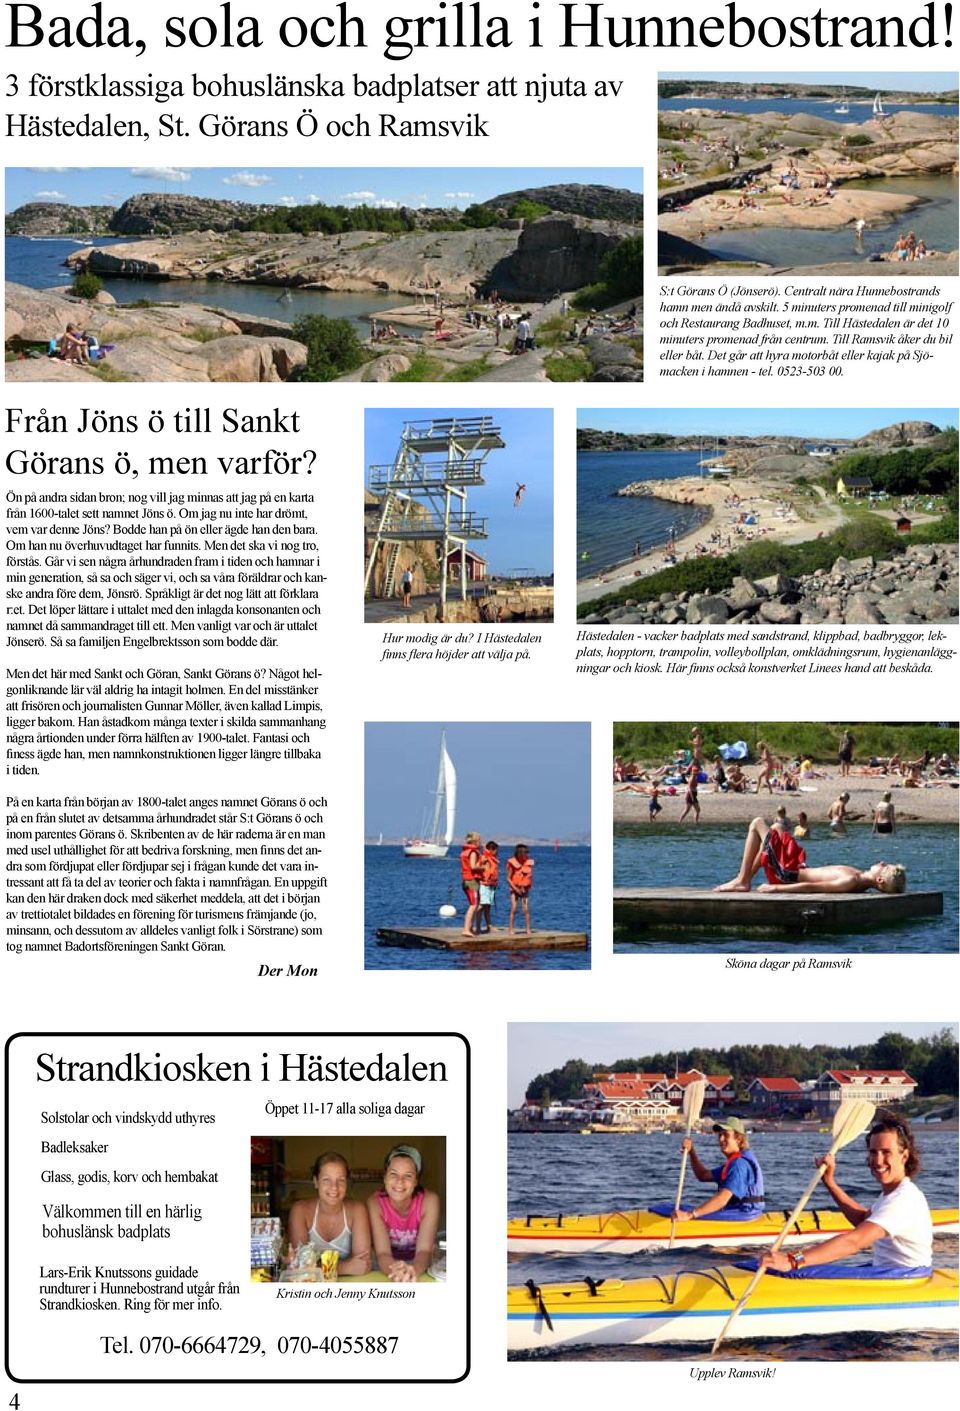 Till Ramsvik åker du bil eller båt. Det går att hyra motorbåt eller kajak på Sjömacken i hamnen - tel. 0523-503 00.